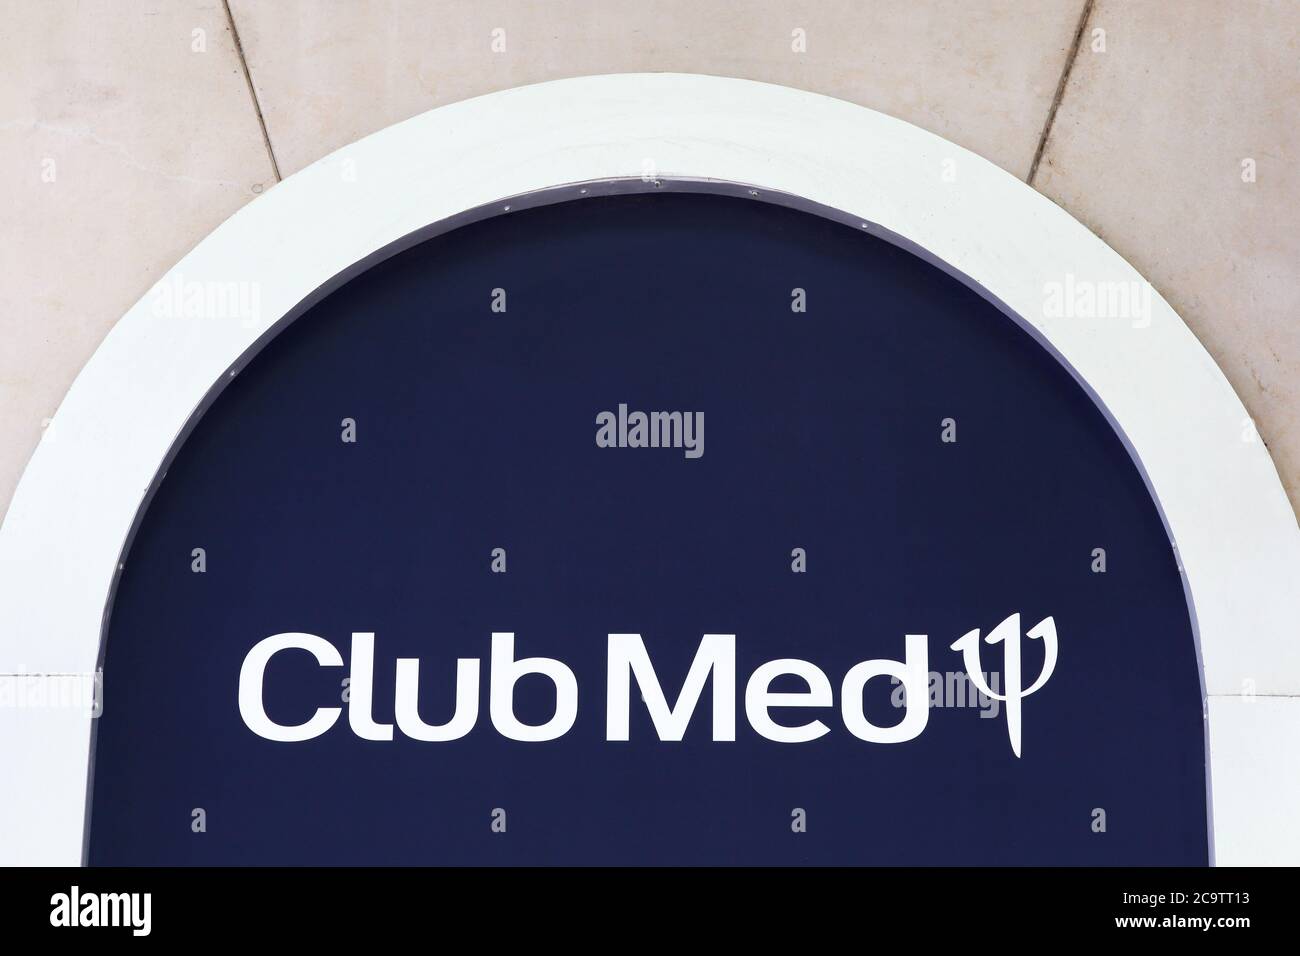 Lyon, France - 28 juin 2020 : logo Club med sur un mur. Club Med et précédemment connu sous le nom de Club Méditerranée est une société chinoise Banque D'Images